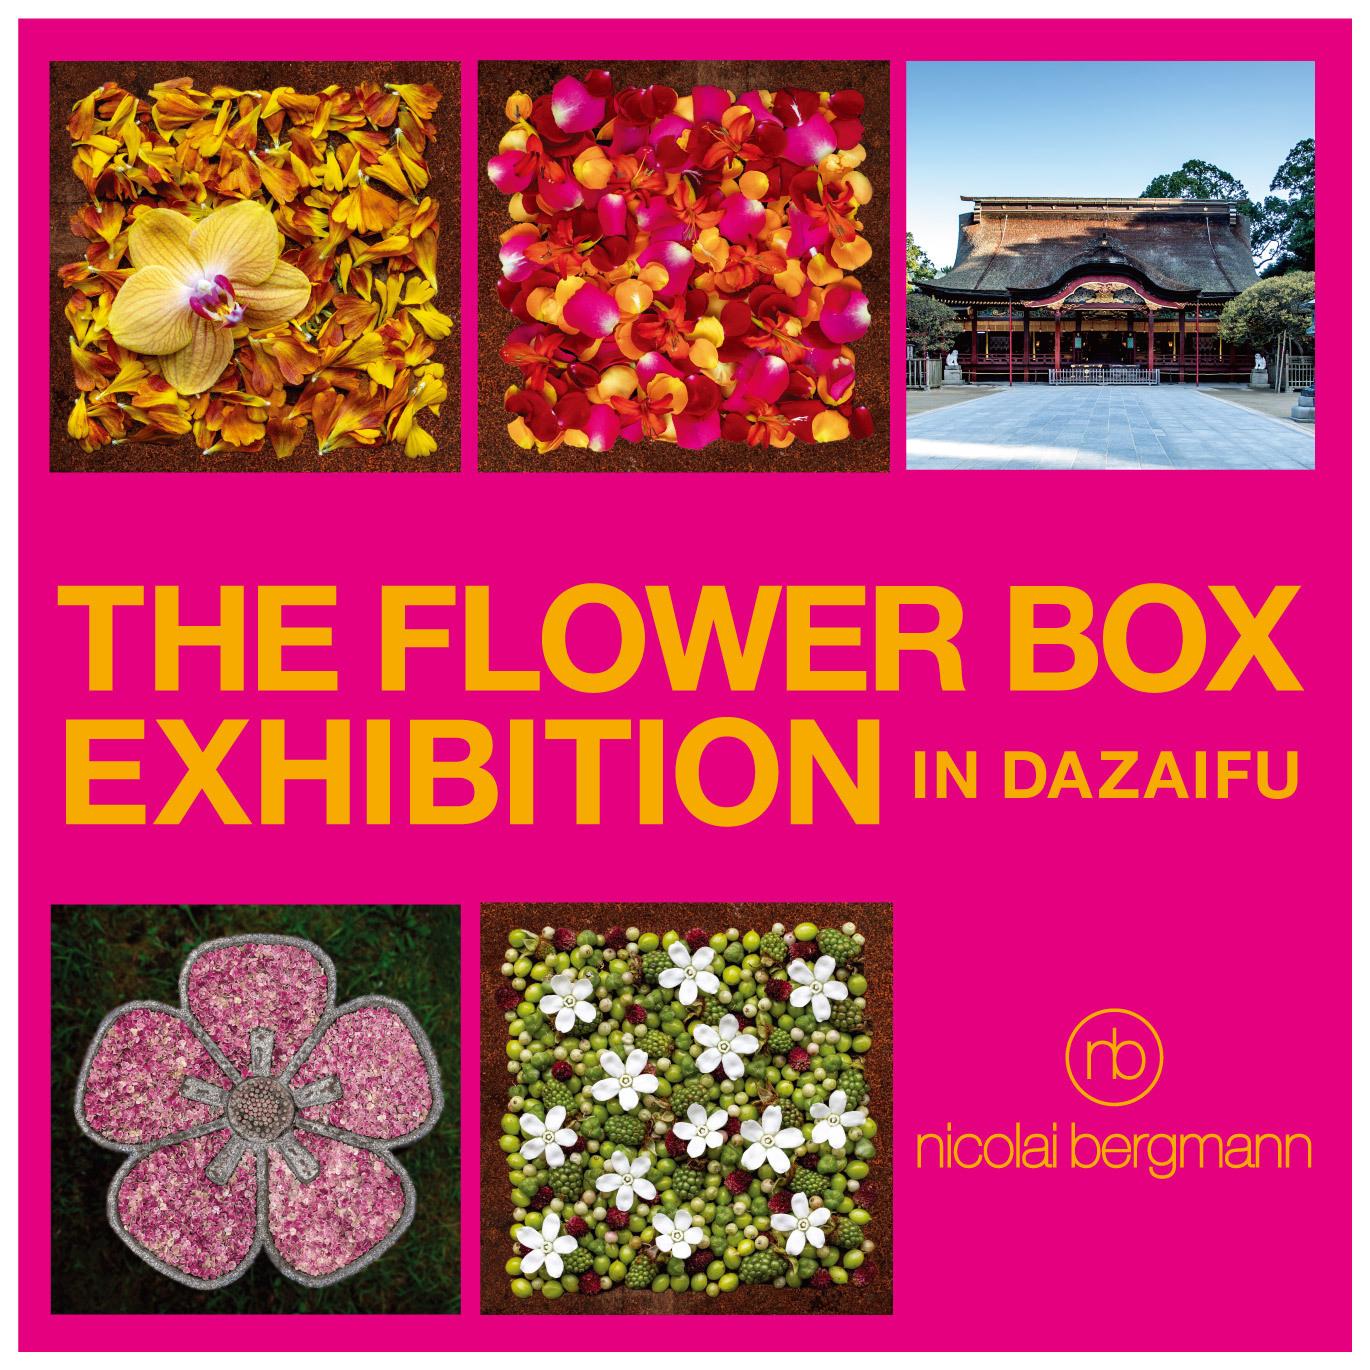 ニコライ・バーグマン作品展「THE FLOWER BOX EXHIBITION IN DAZAIFU」-1